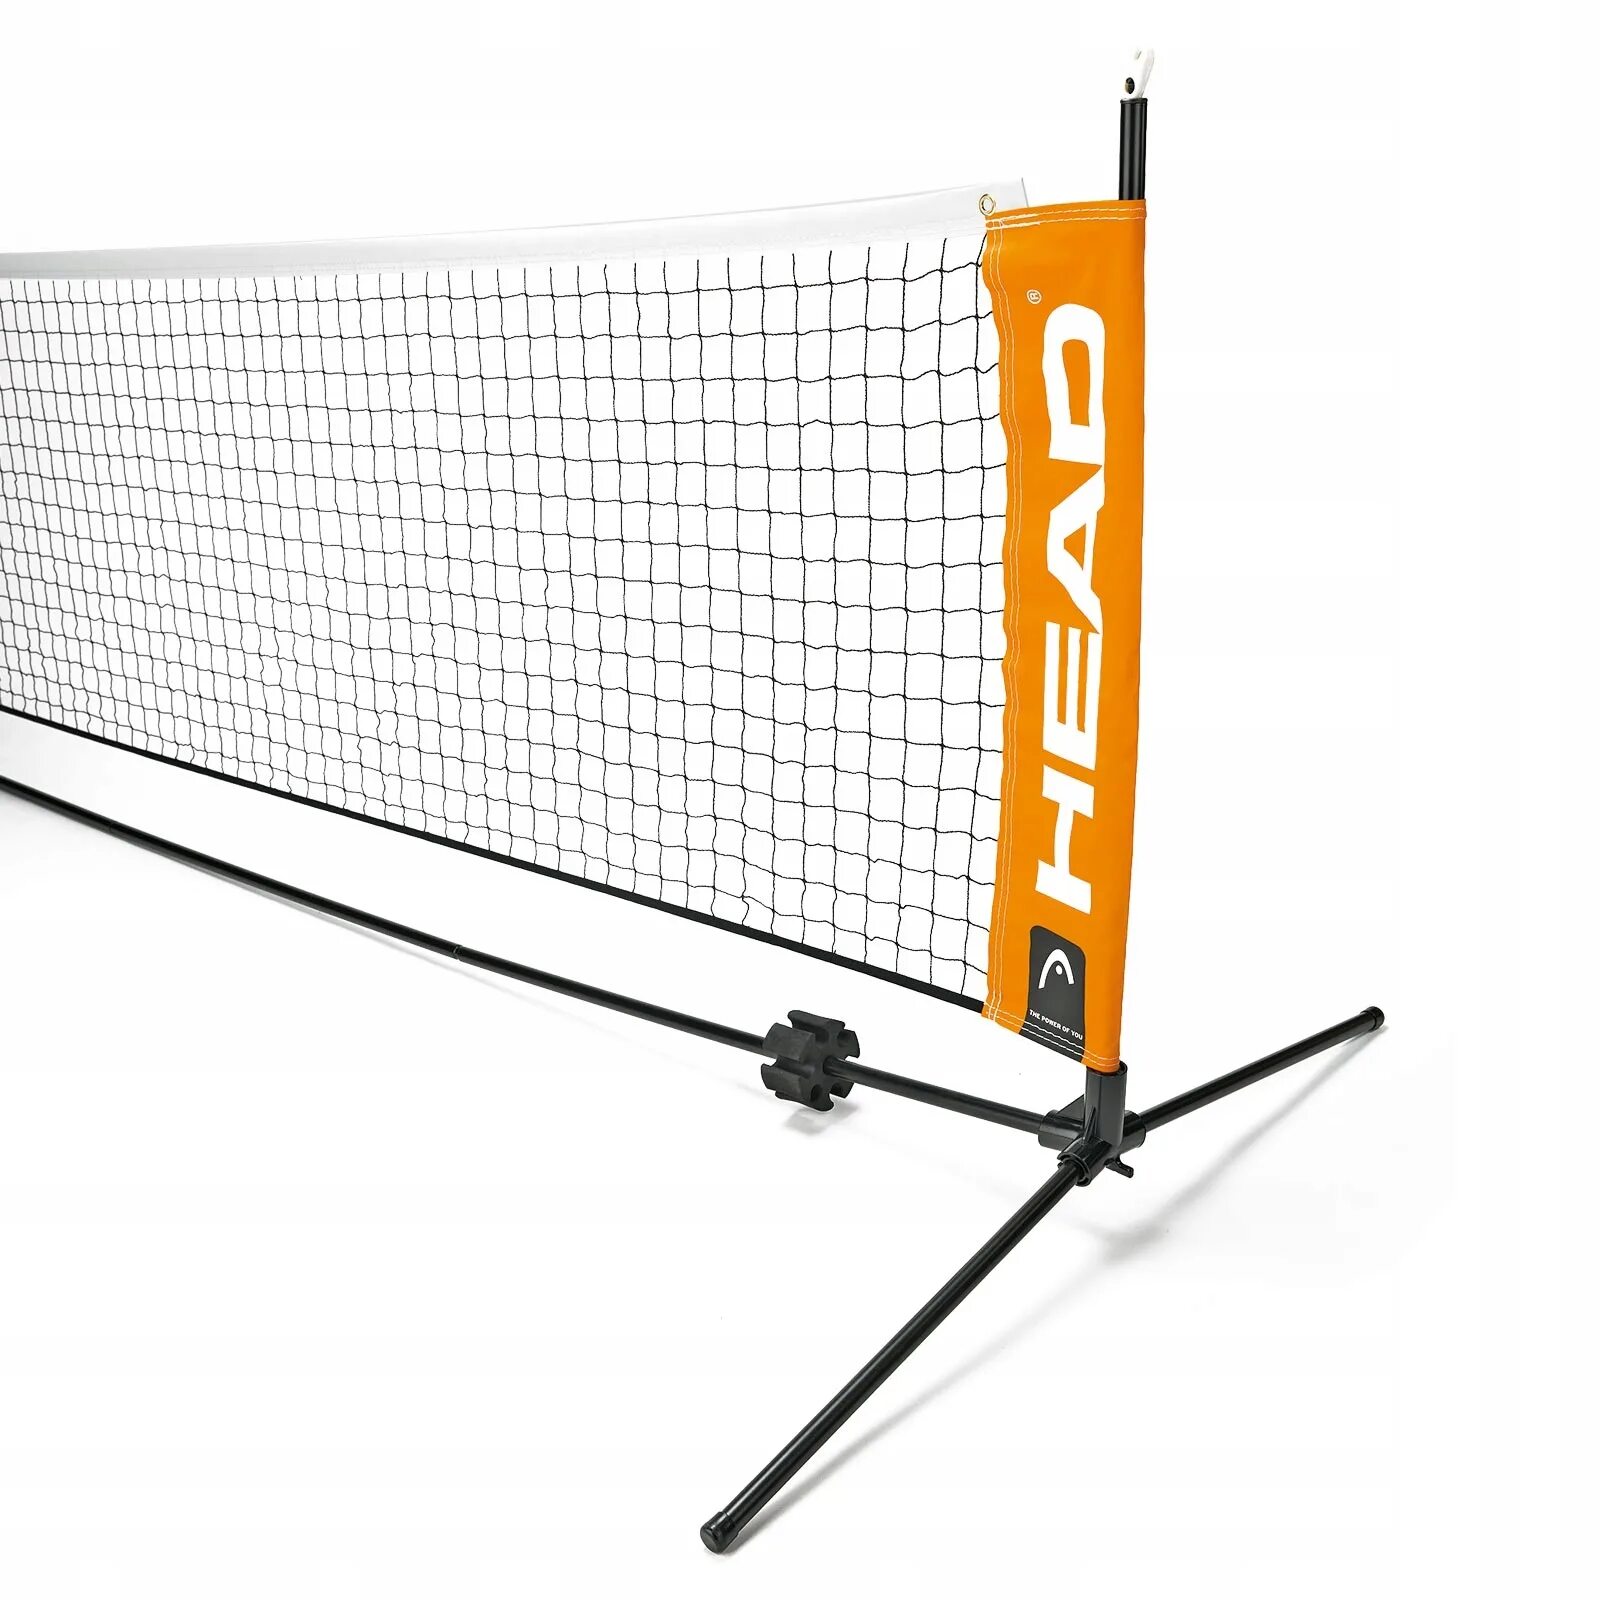 Сетка для настольного тенниса купить. Mini Tennis net Set 6.1 м. Сетка для детского тенниса Mini Tennis net 6.1m. Сетка Wilson для большого тенниса. Мини-сетка для теннисного корта 6м Toolz.